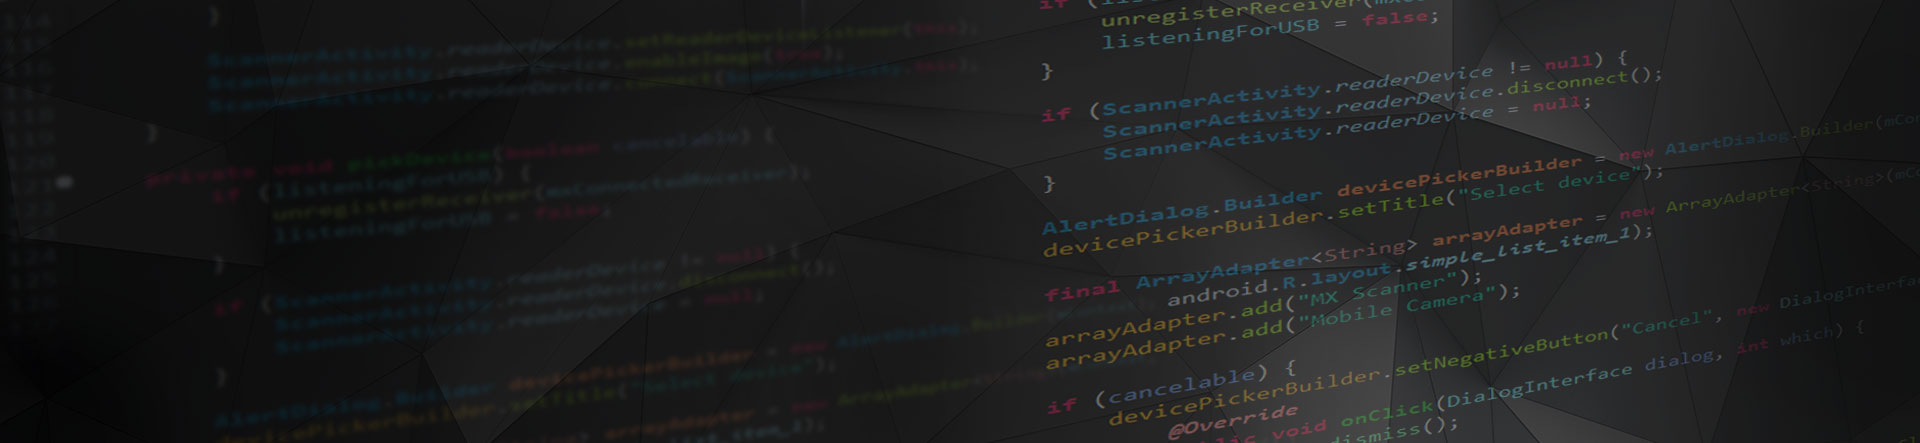 code software for development kit on black banner